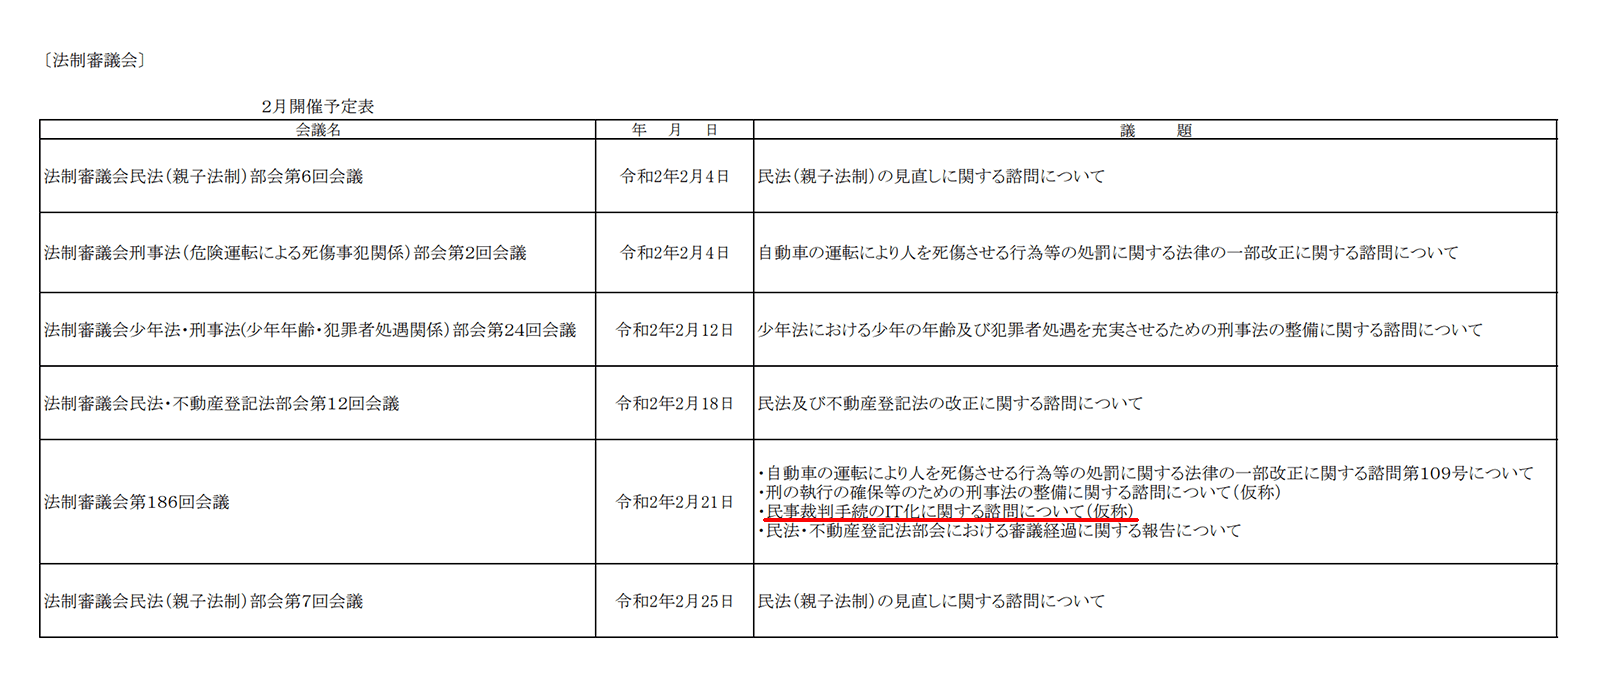 法制審議会開催予定 http://www.moj.go.jp/content/001292886.pdf 2020年2月16日最終アクセス